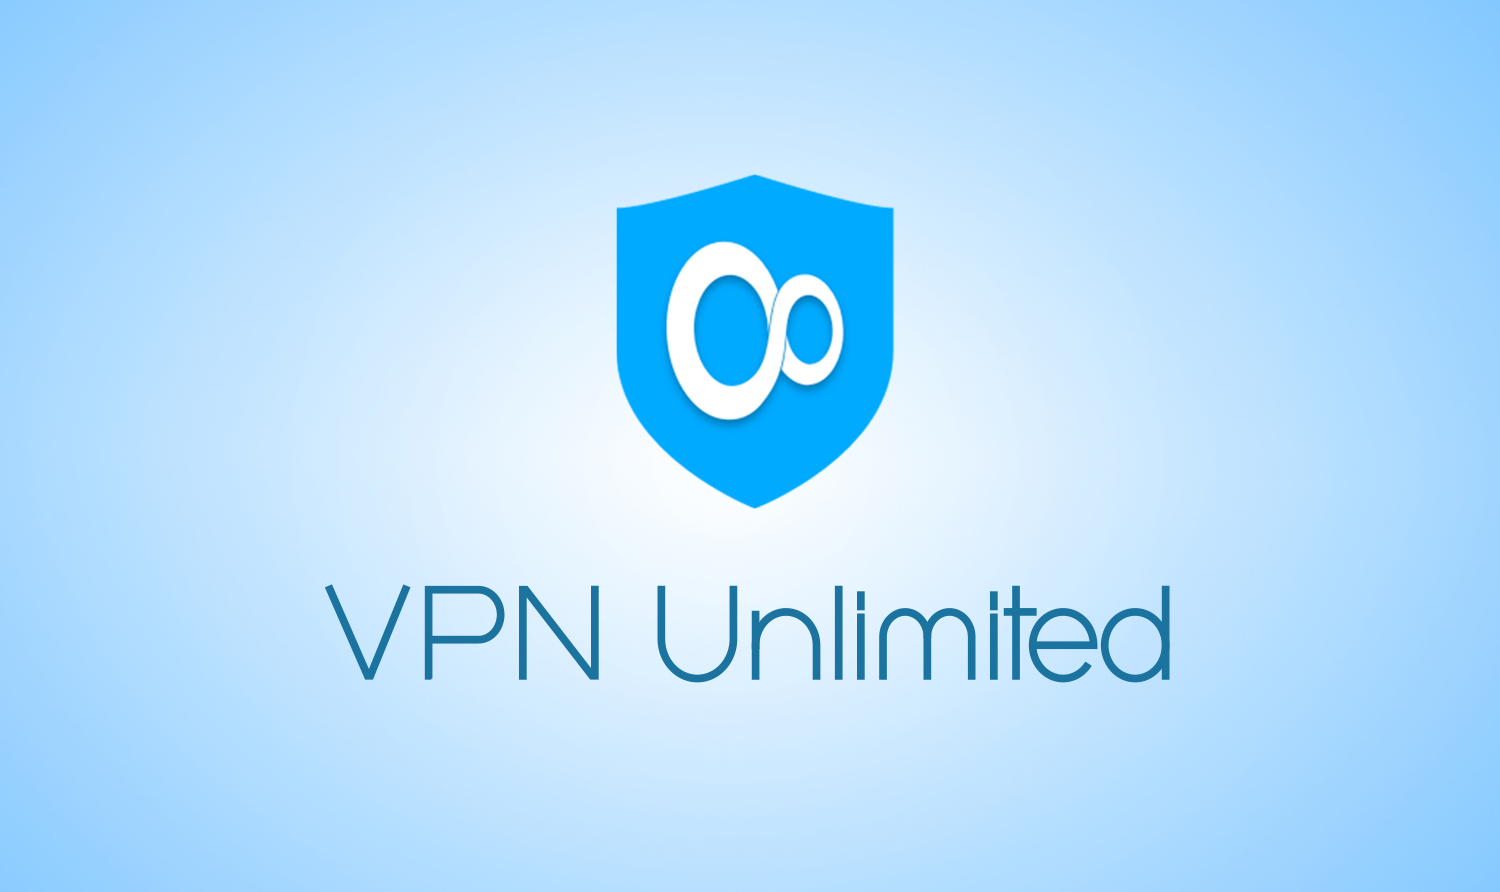 Teoría básica Tomar conciencia Instantáneamente VPN Unlimited Software Review